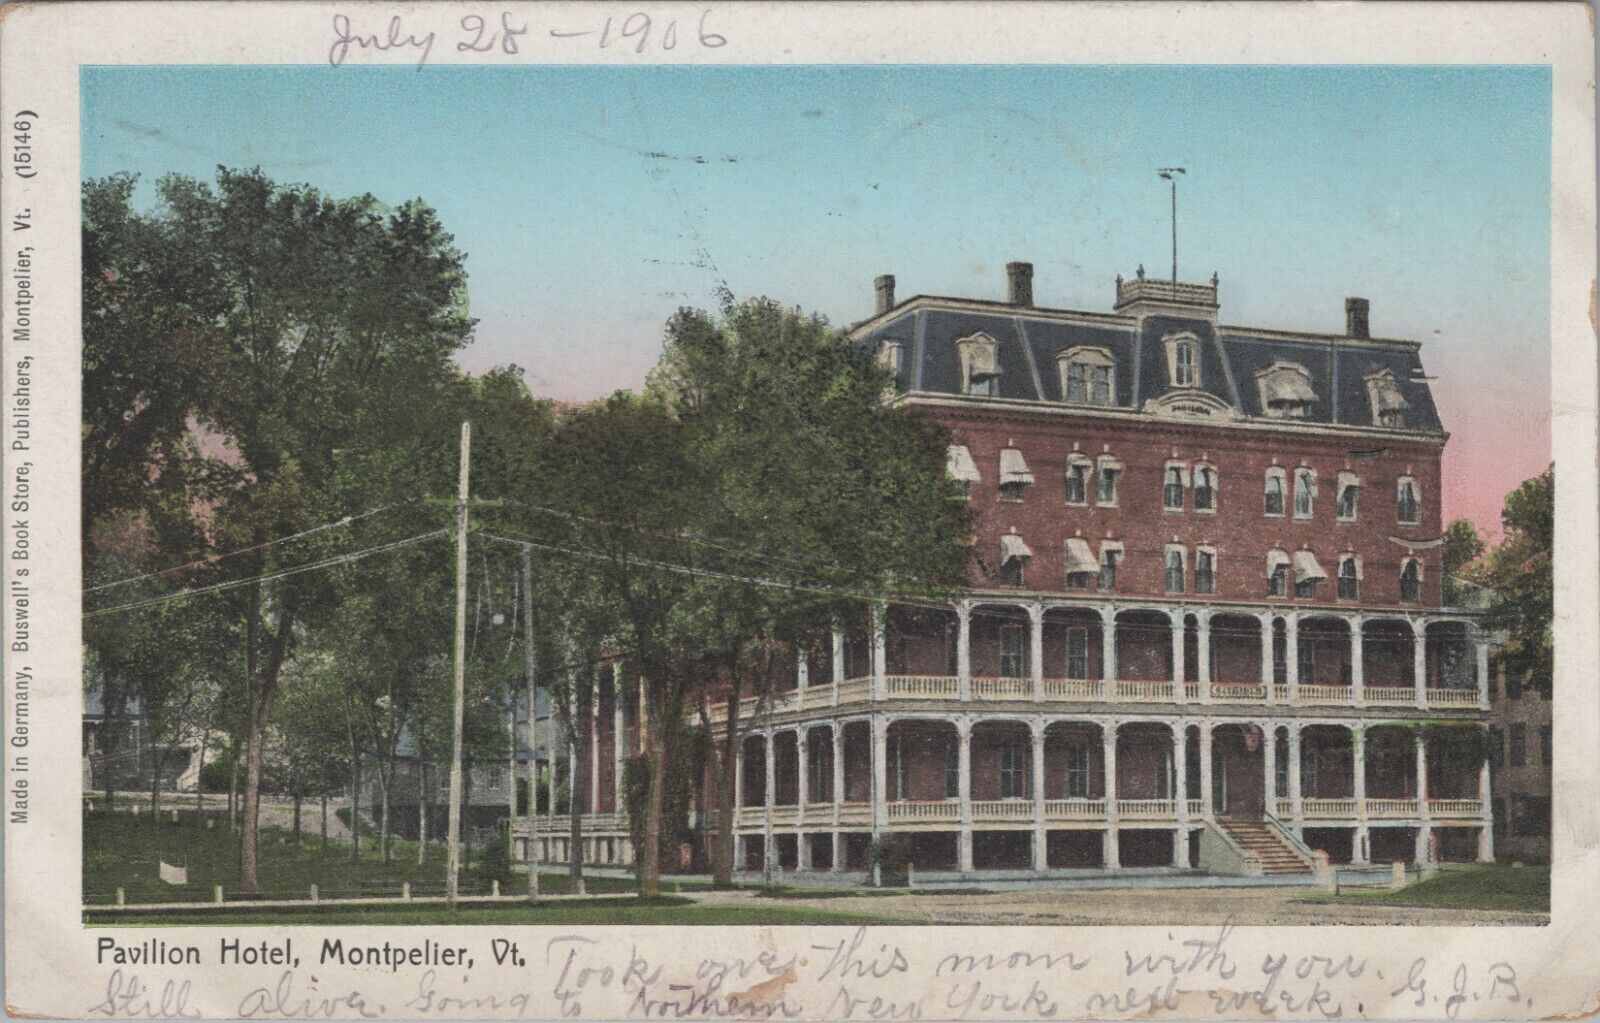 c1905 Pavilion Hotel Montpelier Vermont Buswall\'s Book Stores postcard E87